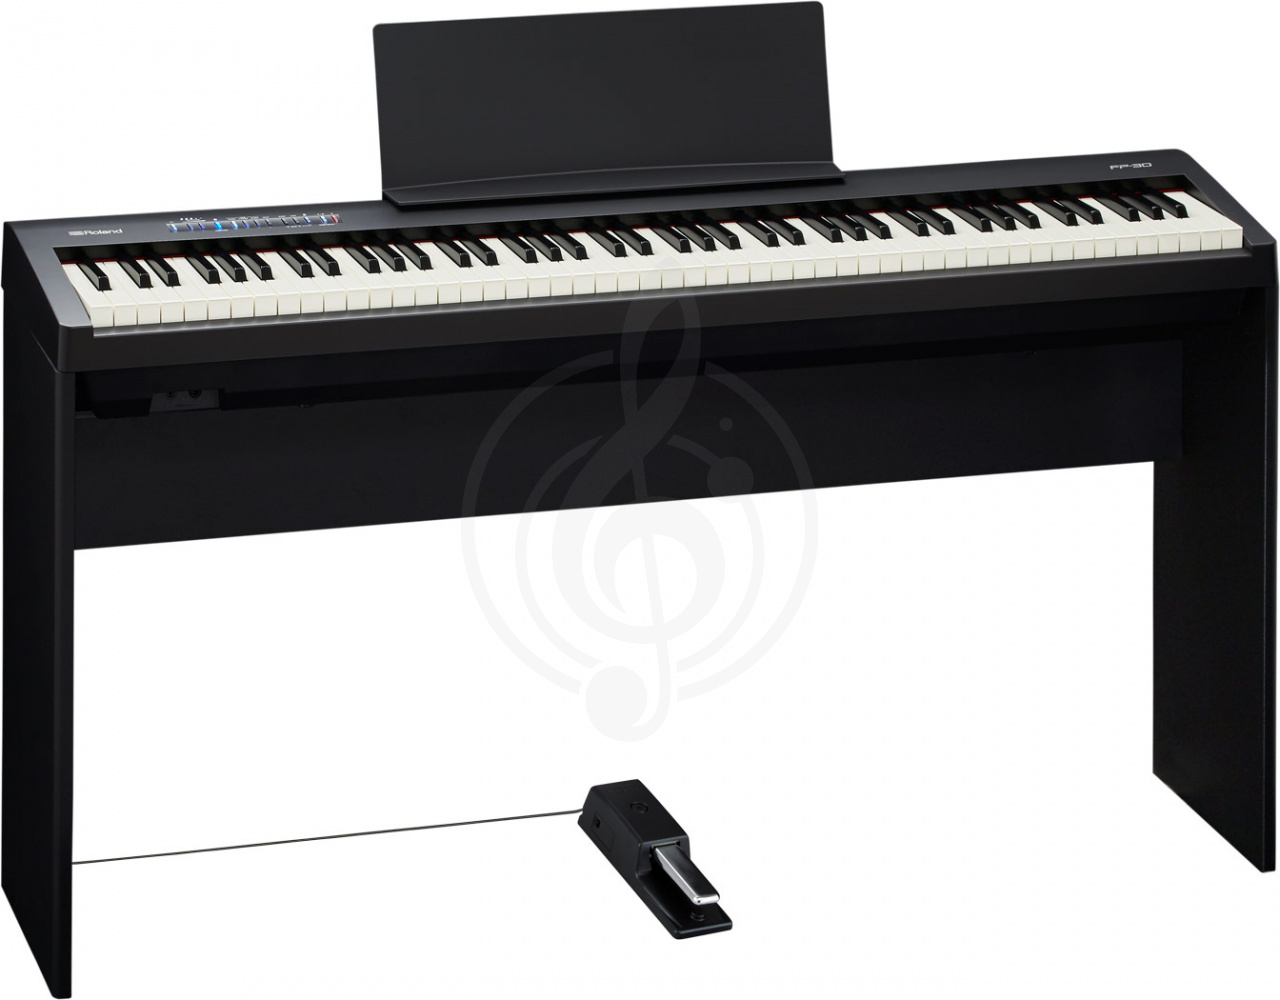 Цифровое пианино Цифровые пианино Roland Roland FP-30-BK - Цифровое пианино FP-30-BK - фото 2